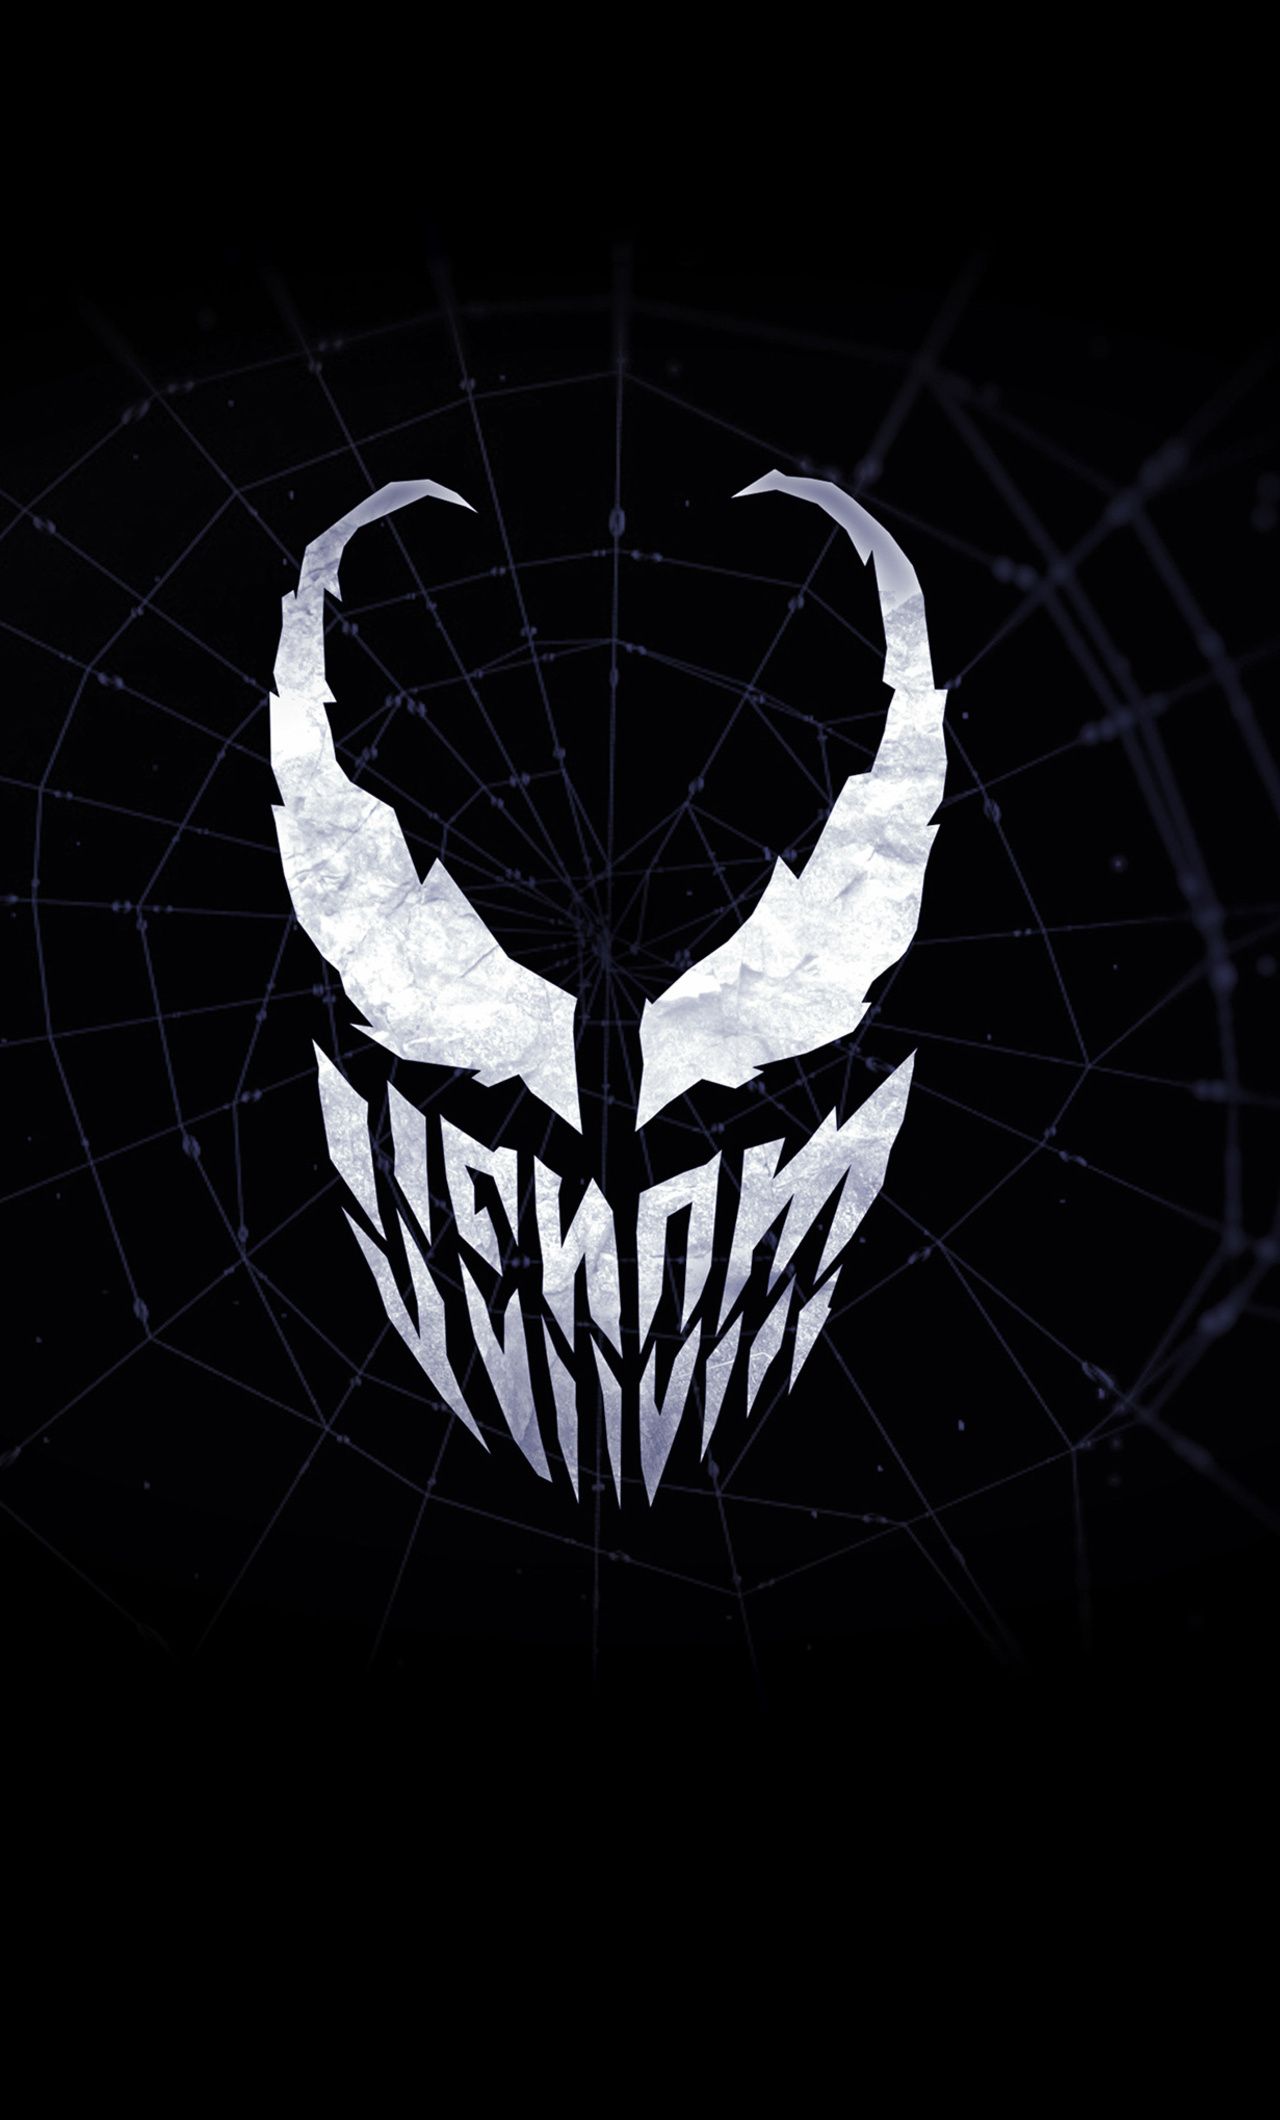 Venom Minimalist Logo 4k iPhone HD 4k Wallpaper